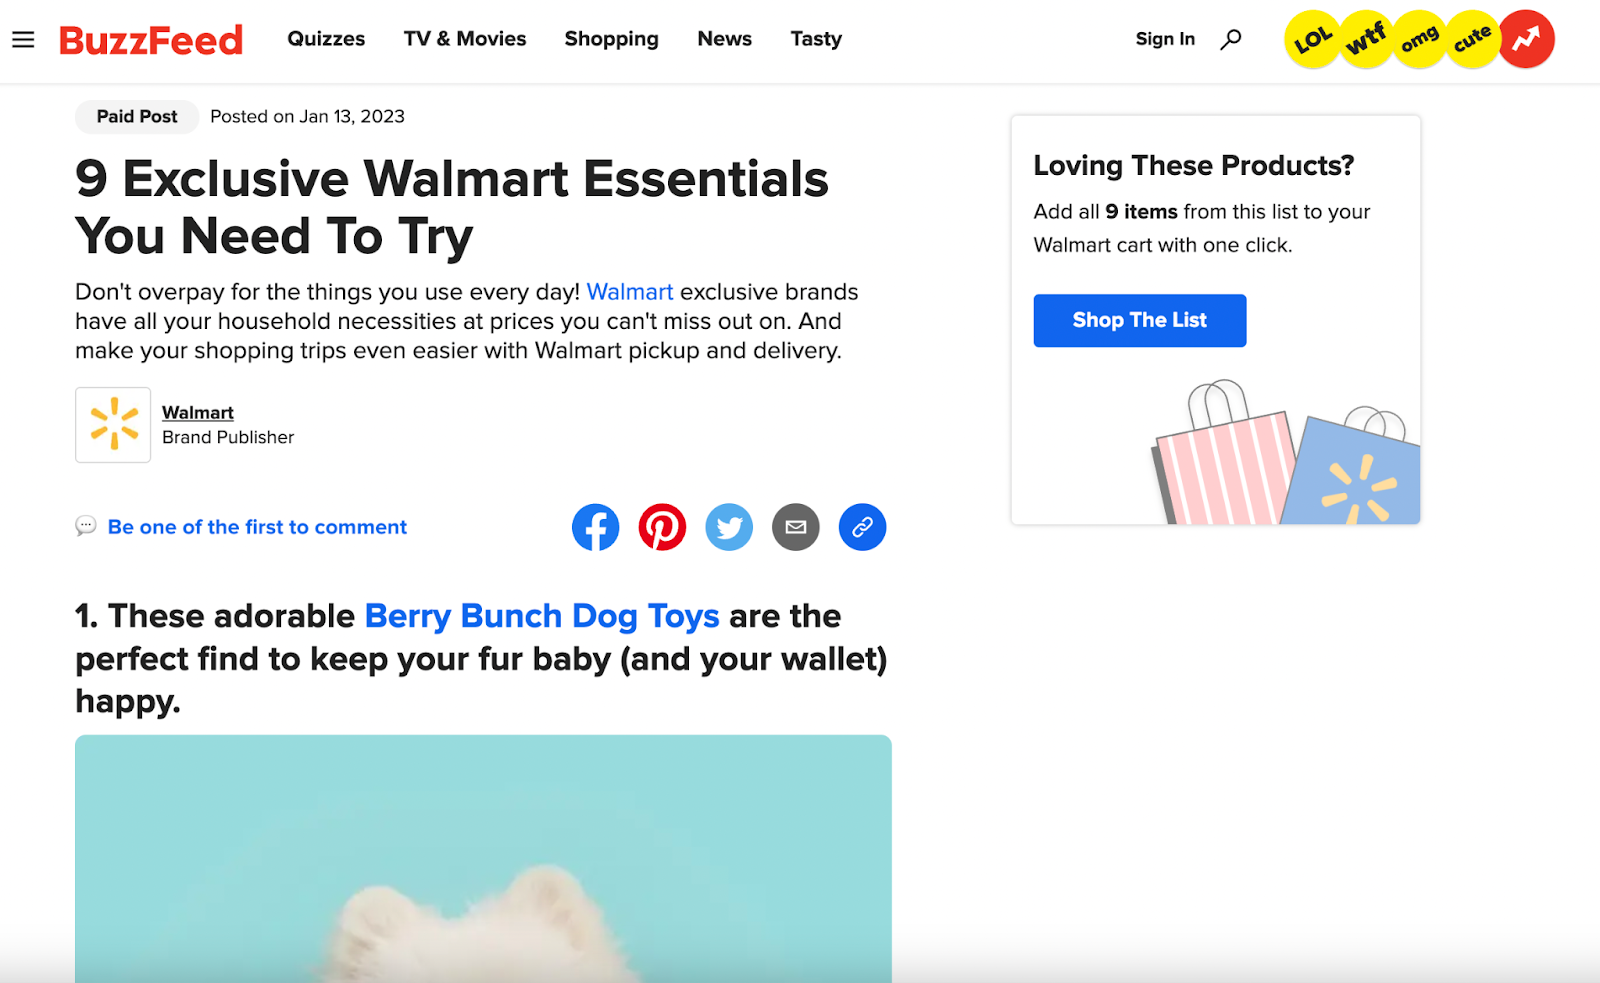 İşletmeler için çevrimiçi reklamcılık: BuzzFeed'de Walmart'tan yerel reklamcılık